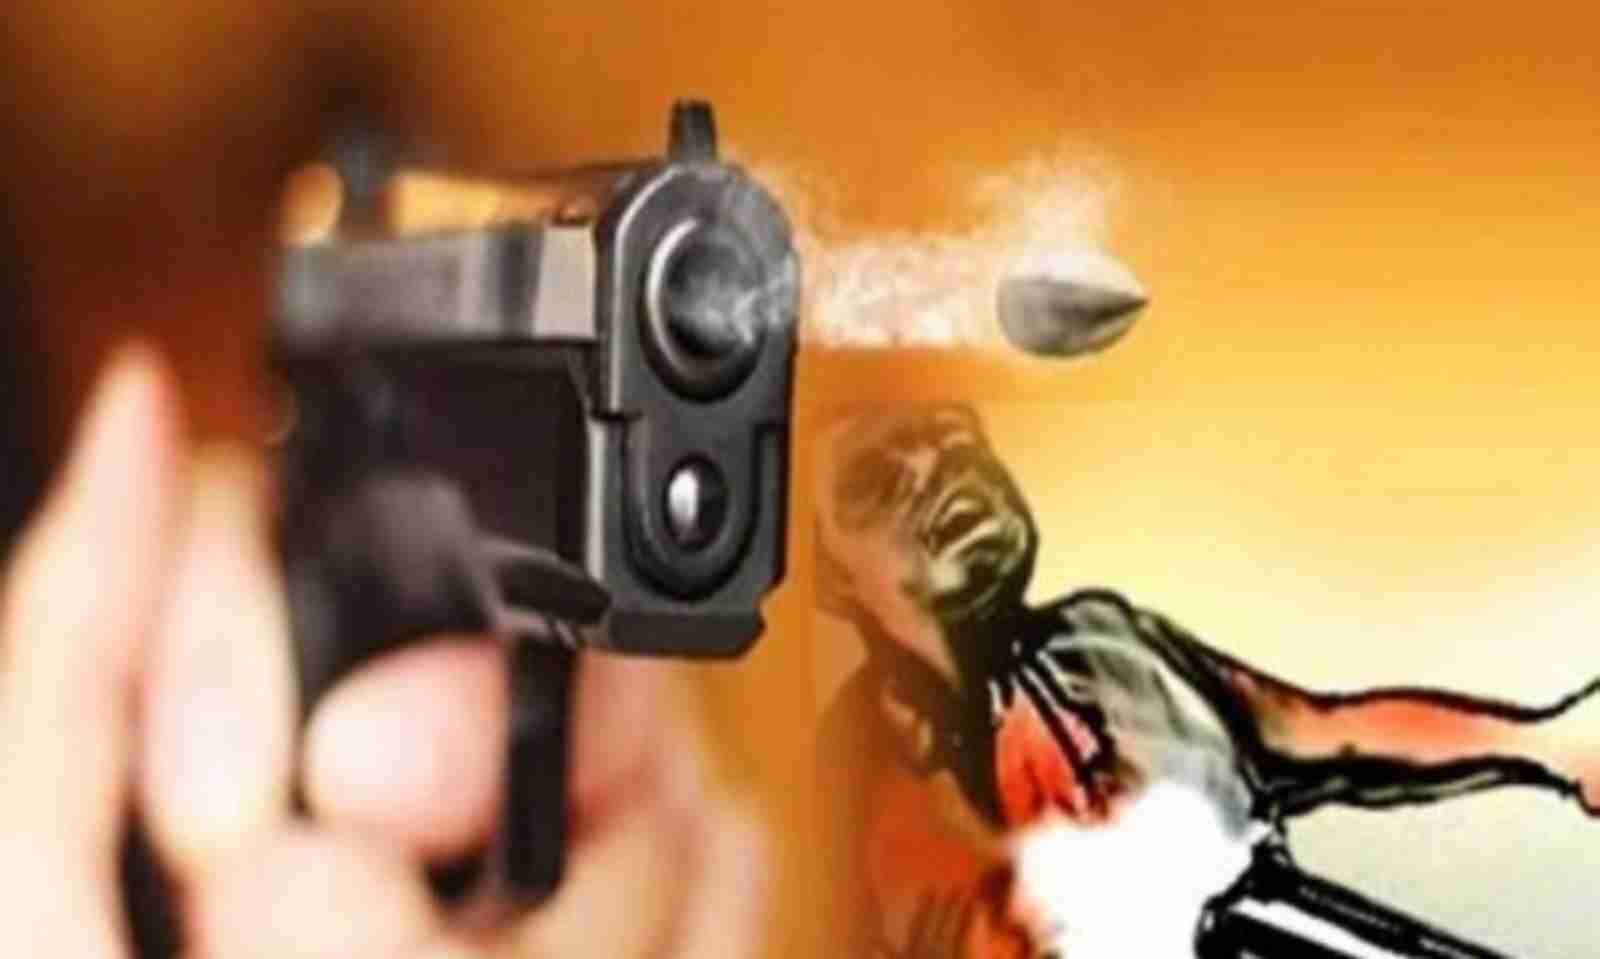 Noida News: बदमाशों ने कलेक्शन एजेंट से गन प्वाइंट पर लूटे 7 लाख रूपए, तलाश में जुटी पुलिस